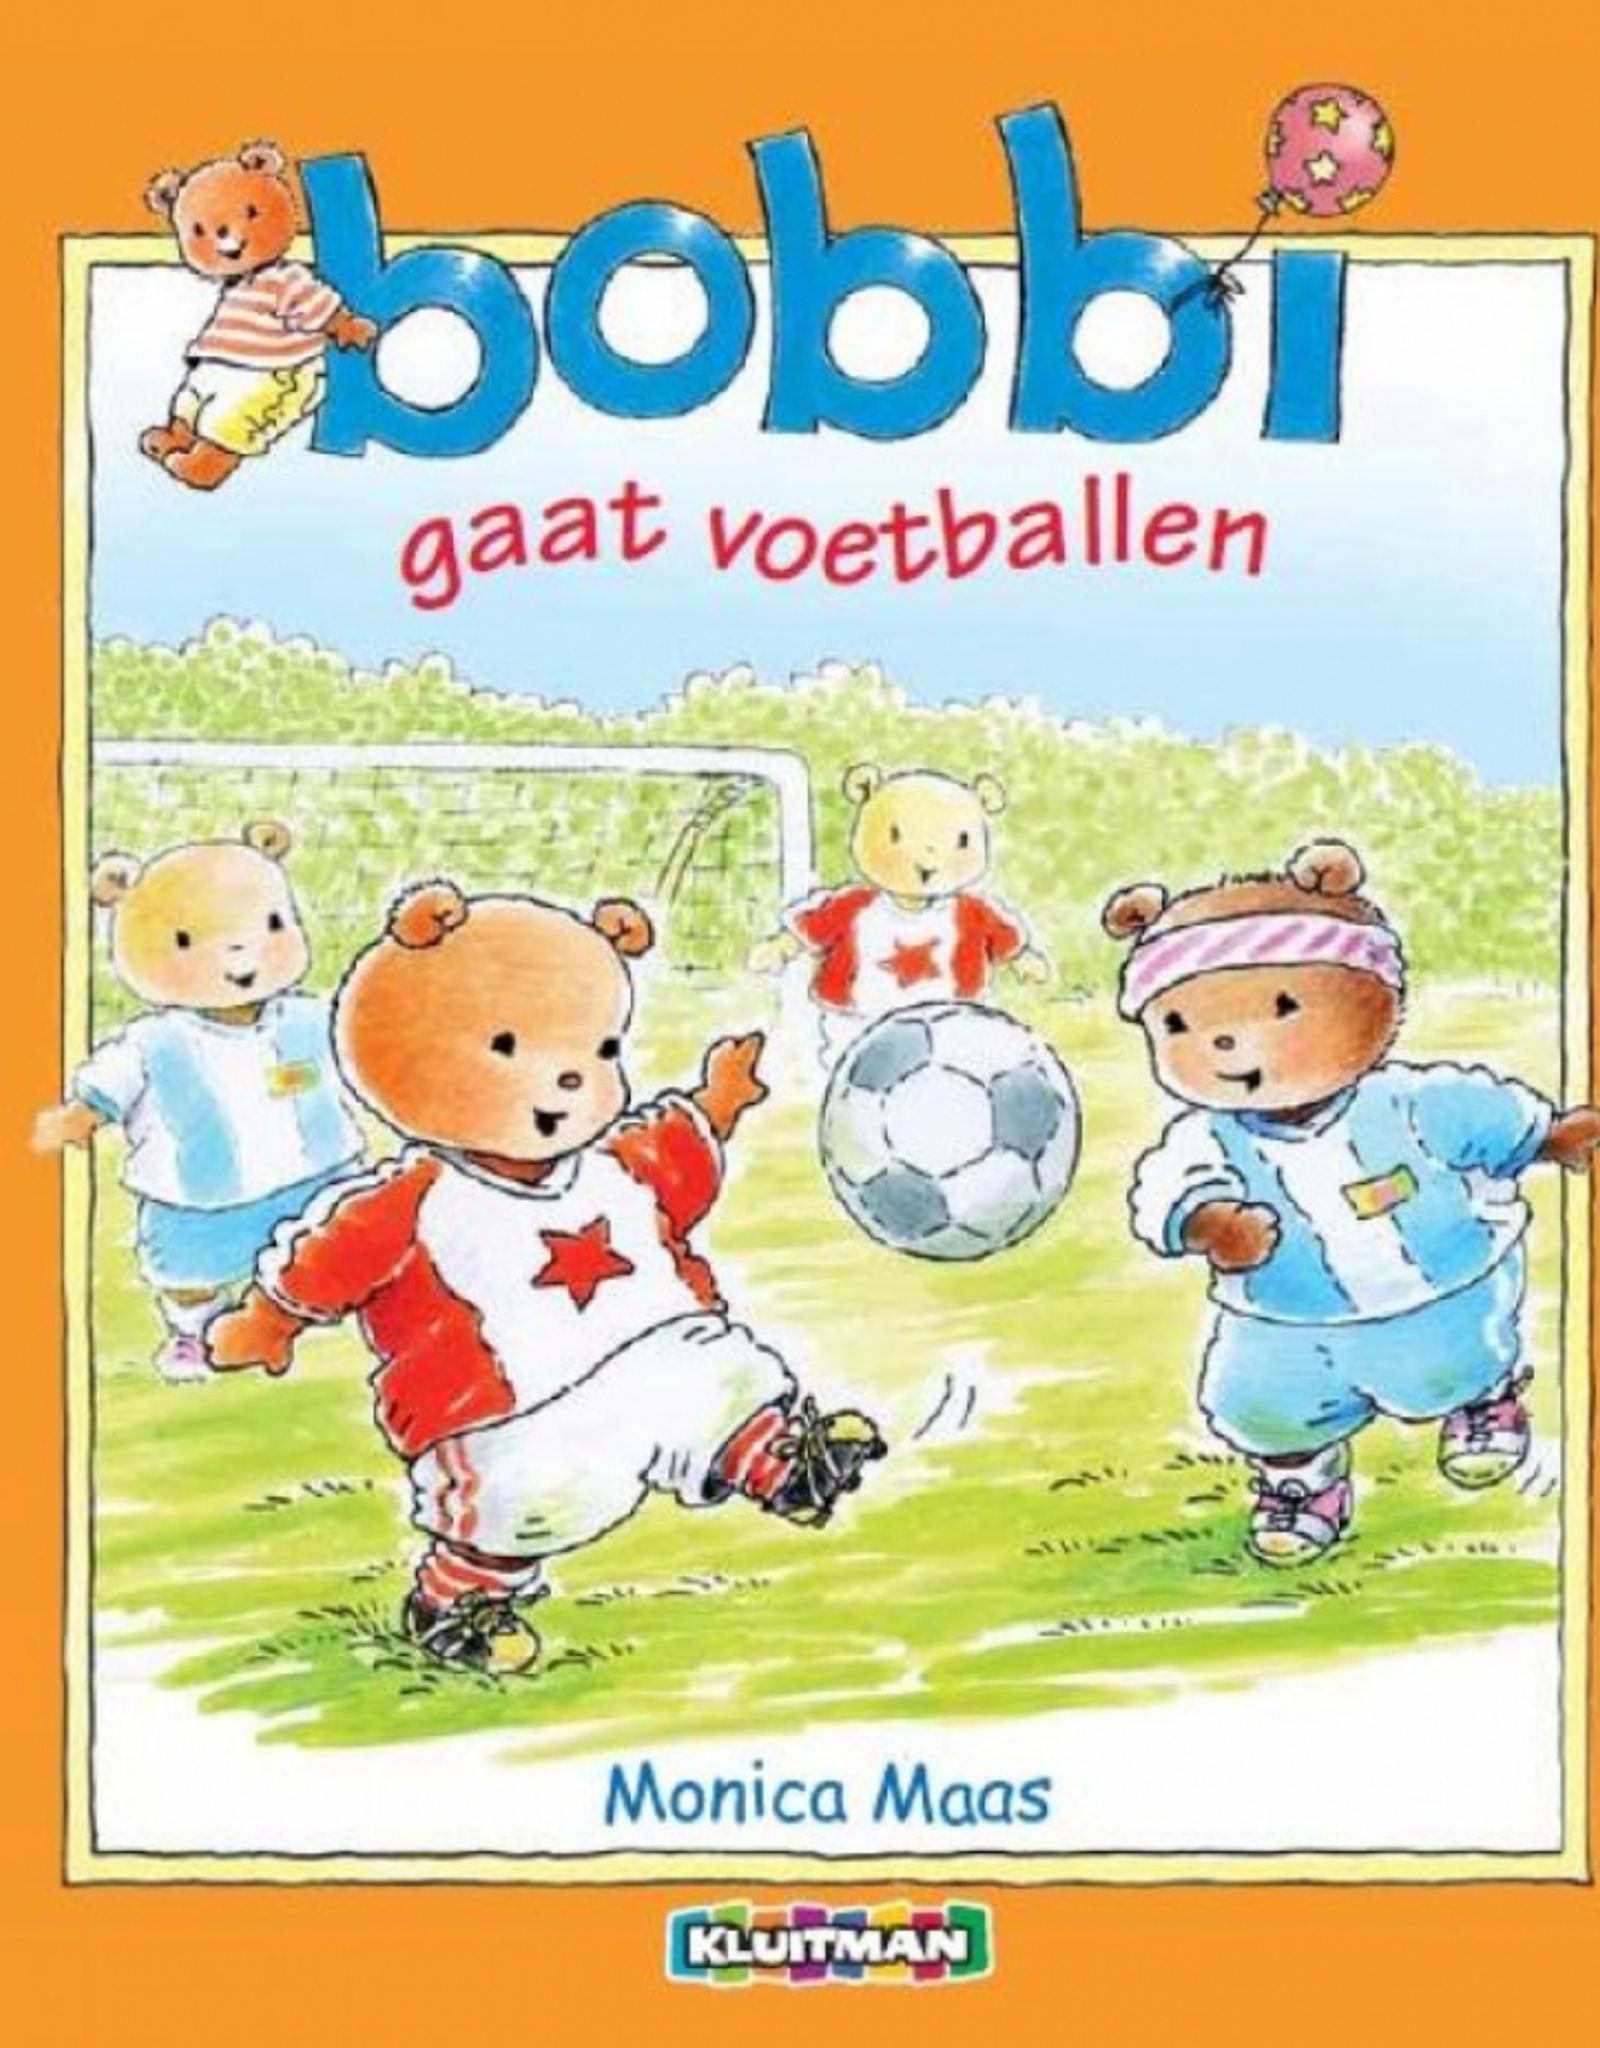 Bobbi gaat Voetballen - Een vrolijk boek voor Peuters